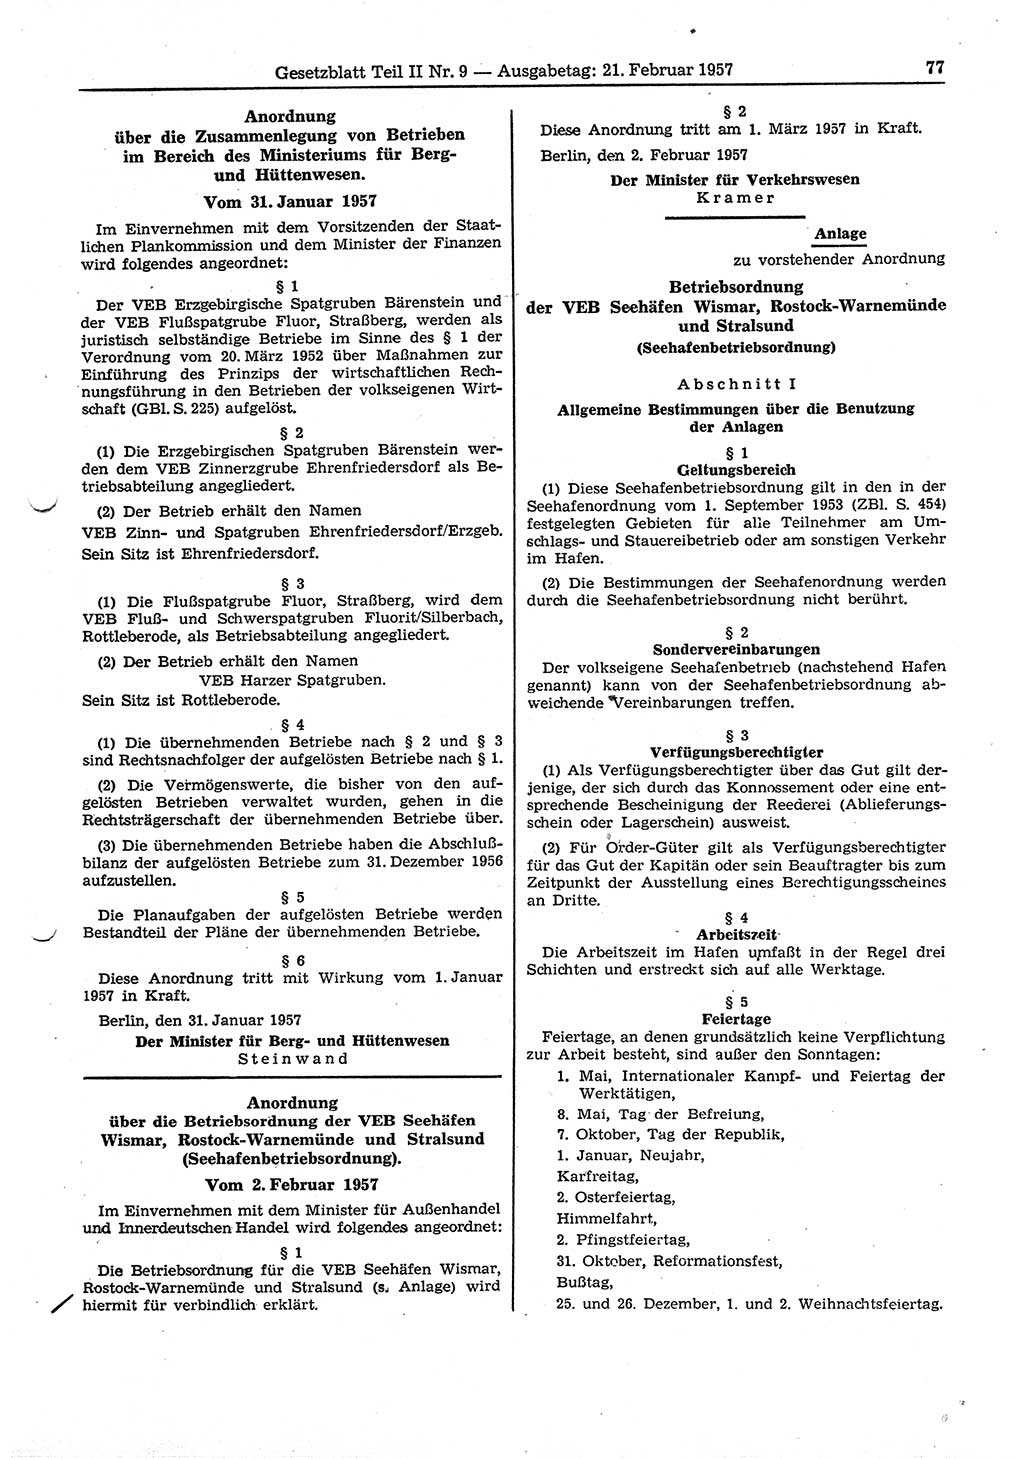 Gesetzblatt (GBl.) der Deutschen Demokratischen Republik (DDR) Teil ⅠⅠ 1957, Seite 77 (GBl. DDR ⅠⅠ 1957, S. 77)